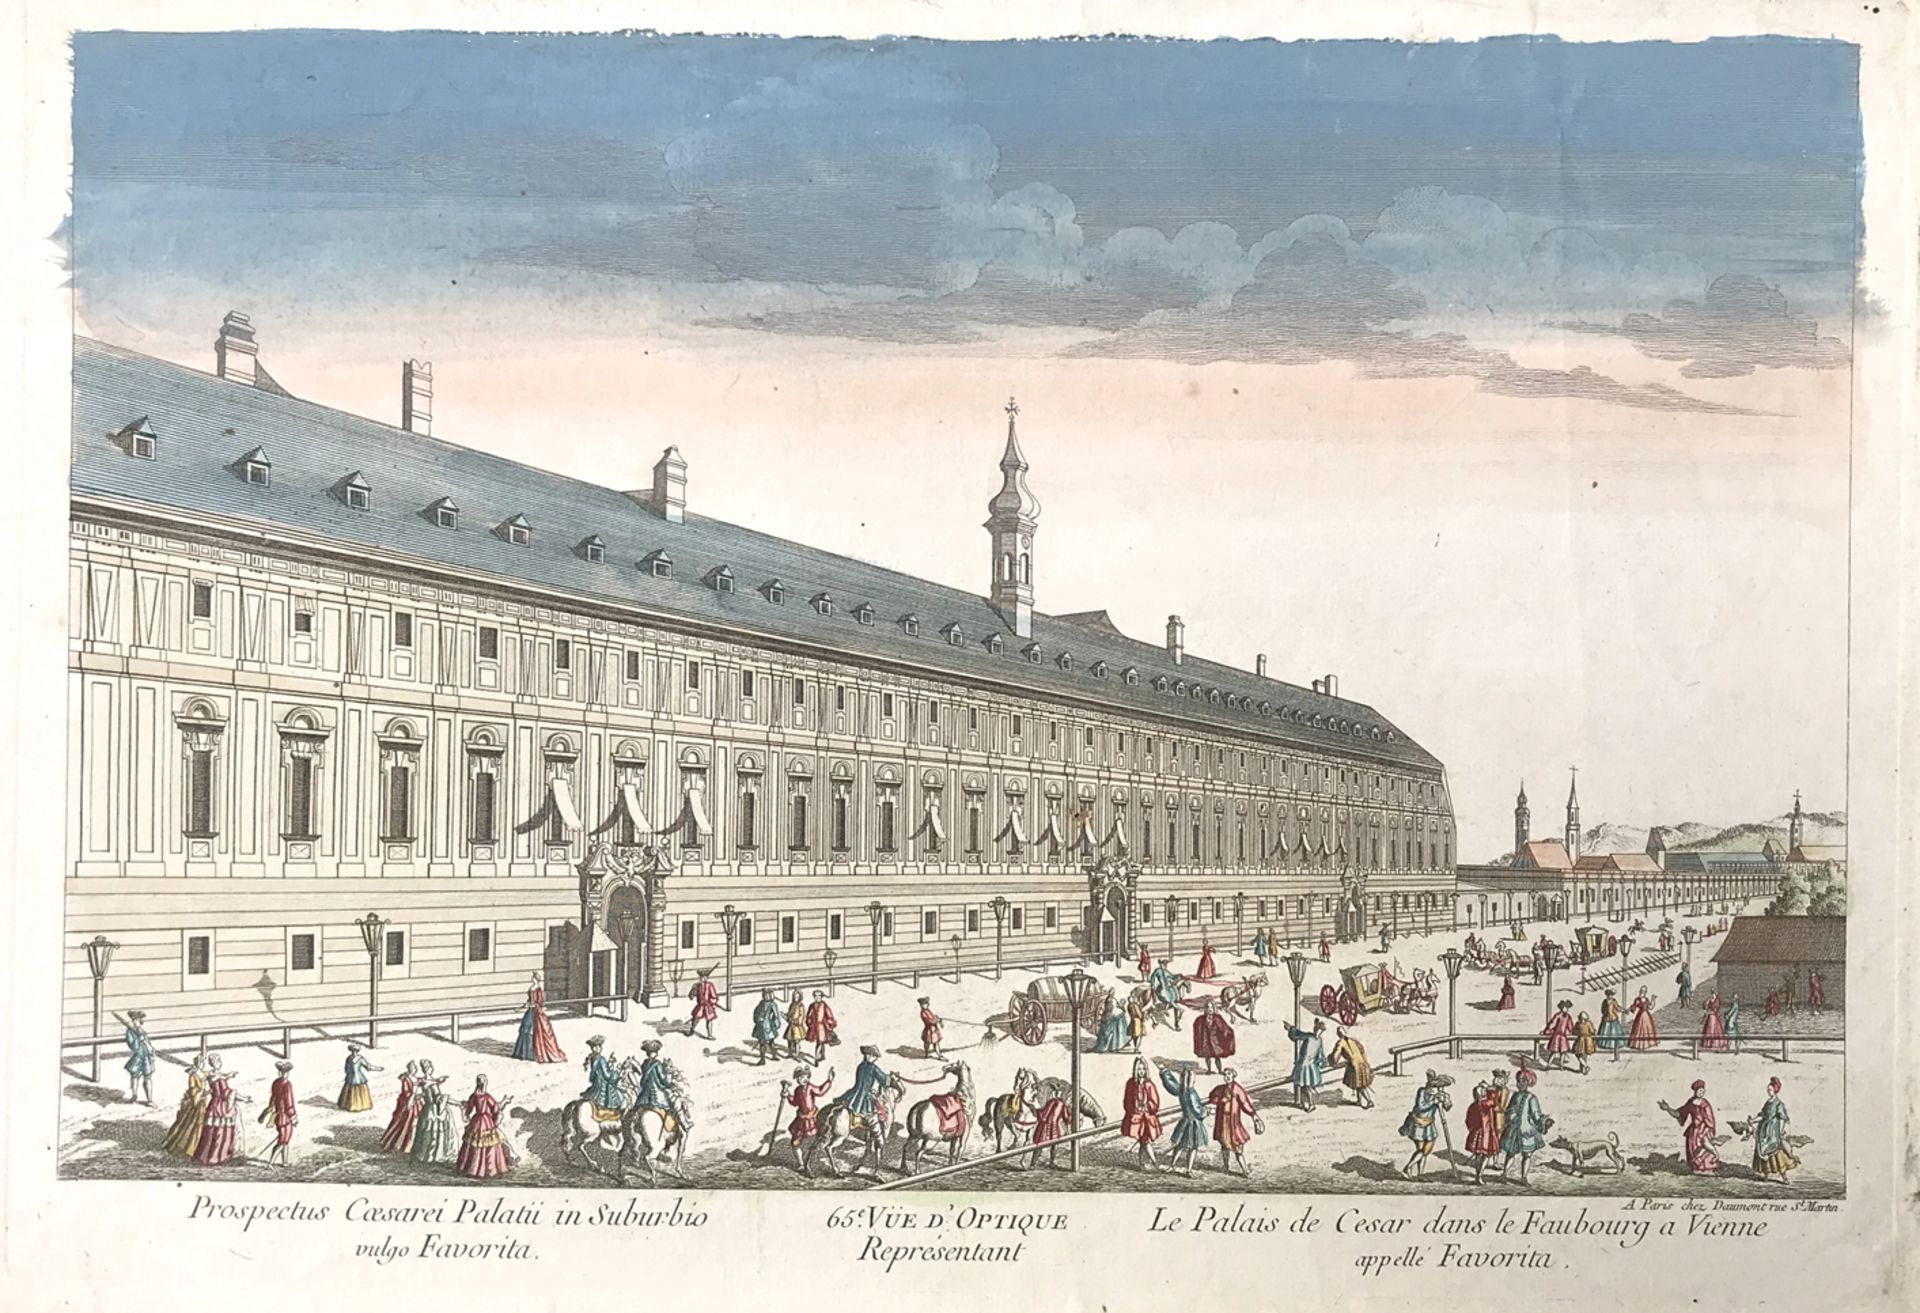 Autriche. Vienne. Deux vues d’optique. XVIIIème siècle.Le grand marché de Vienne. Gravure rehaussée. - Image 2 of 2